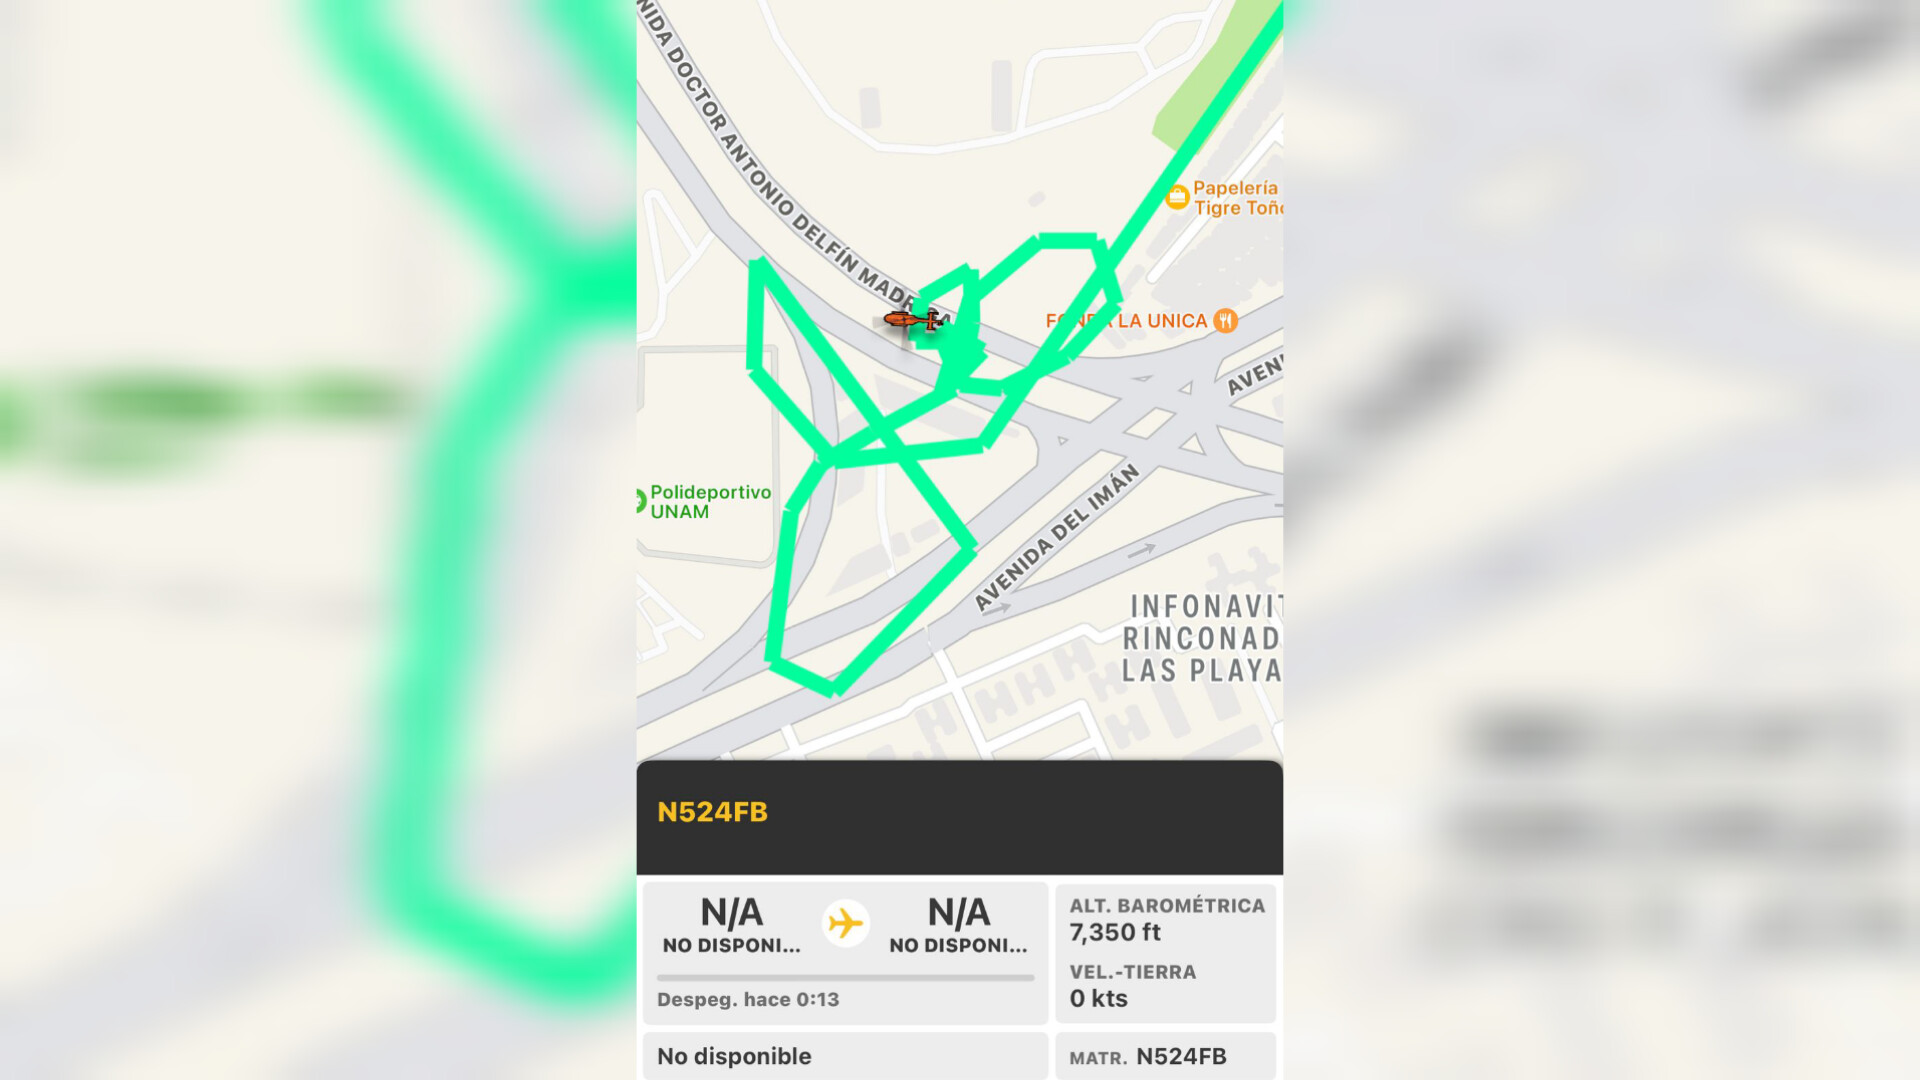 registro gráfico del recorrido del helicóptero, obtenido de una app móvil libre. Pantallazo. Crédito: Especial